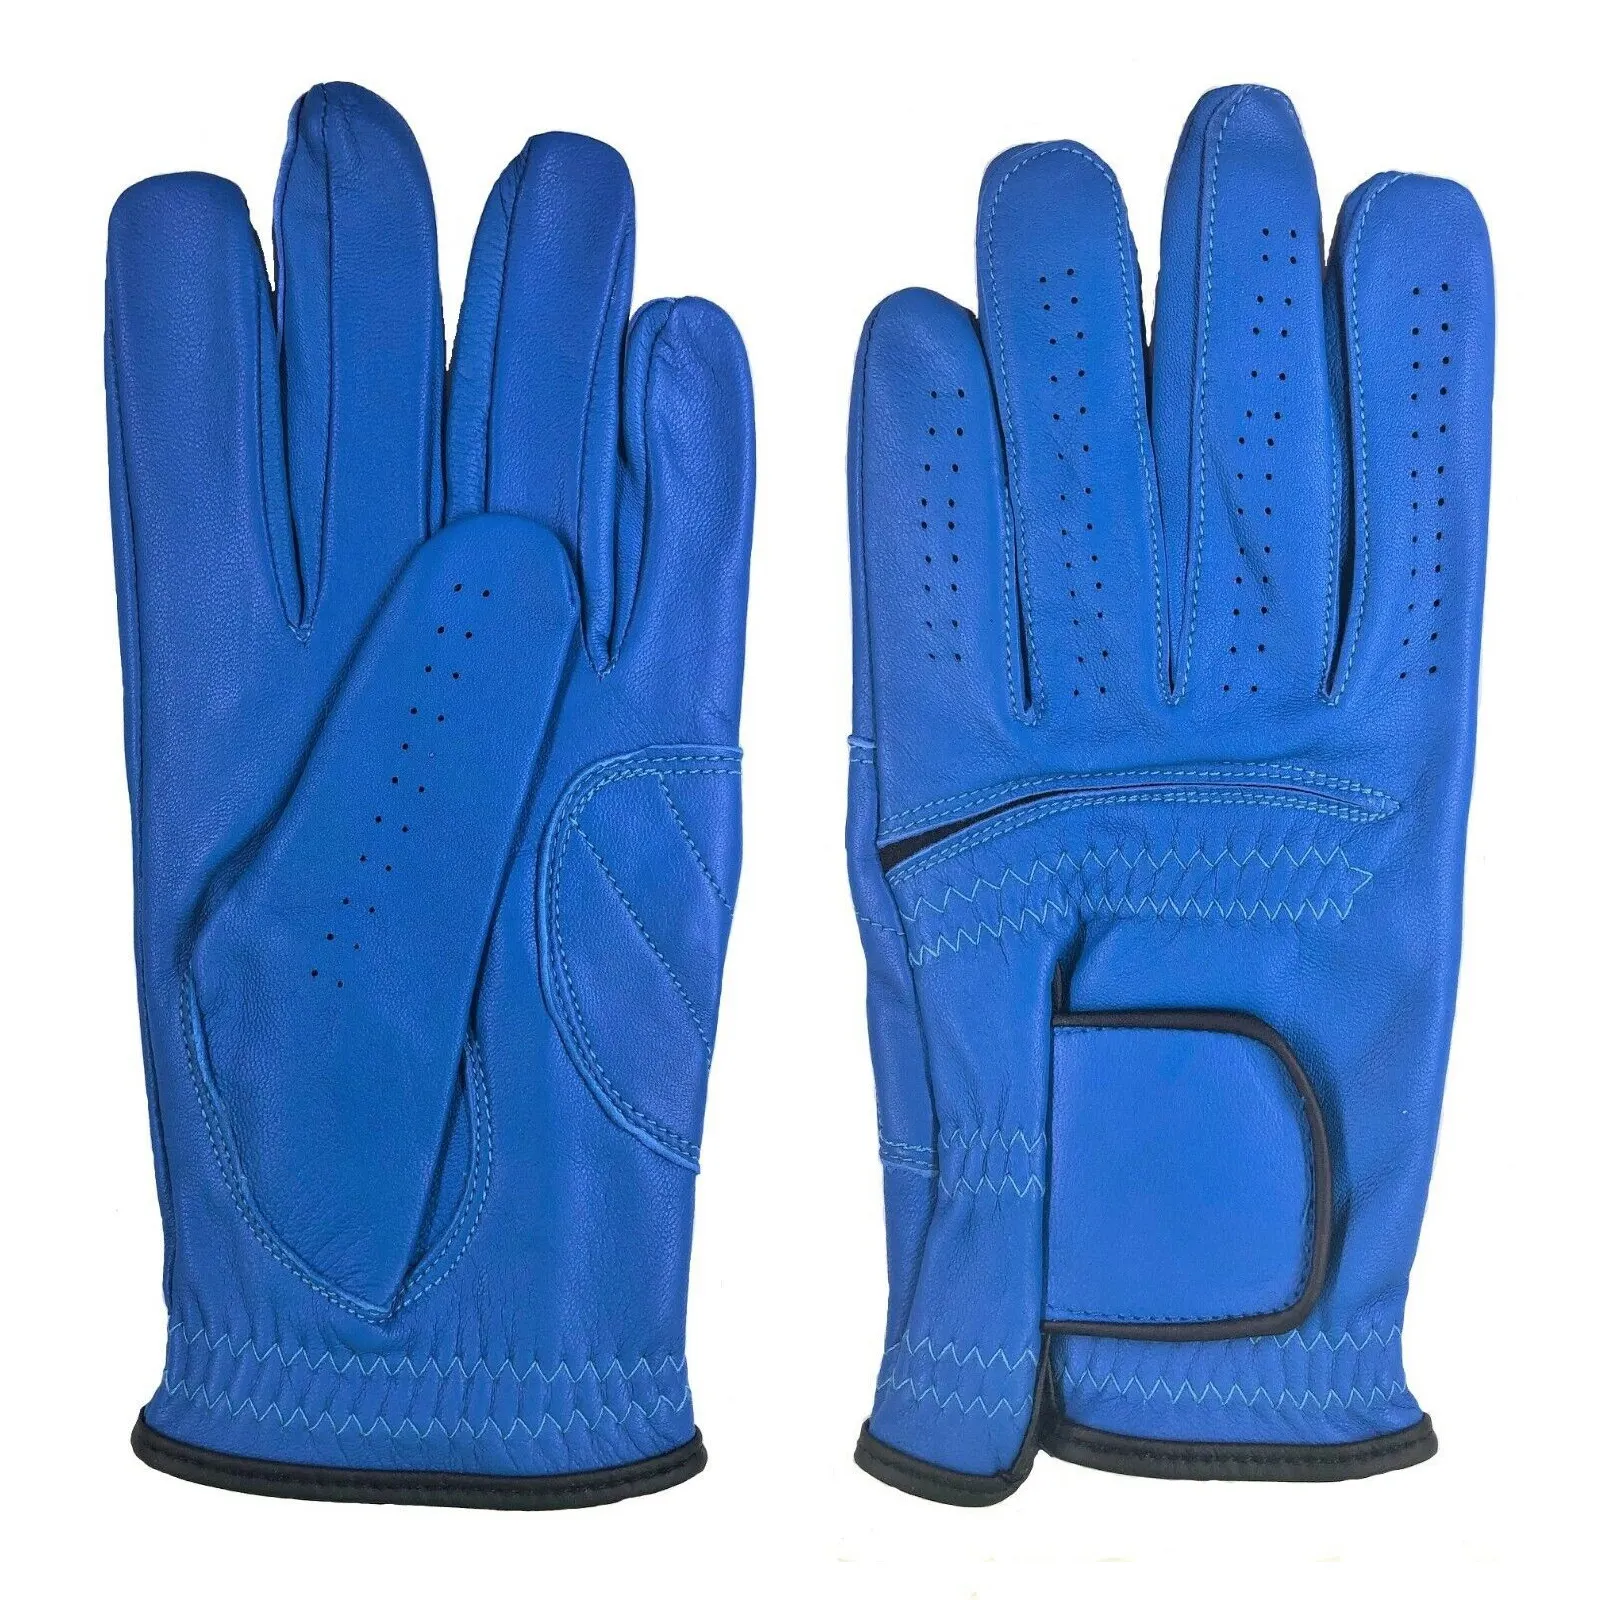 Прецизионные и стильные мужские кожаные перчатки для гольфа с левой правой рукой, яркие цвета для каждого игрока в гольф